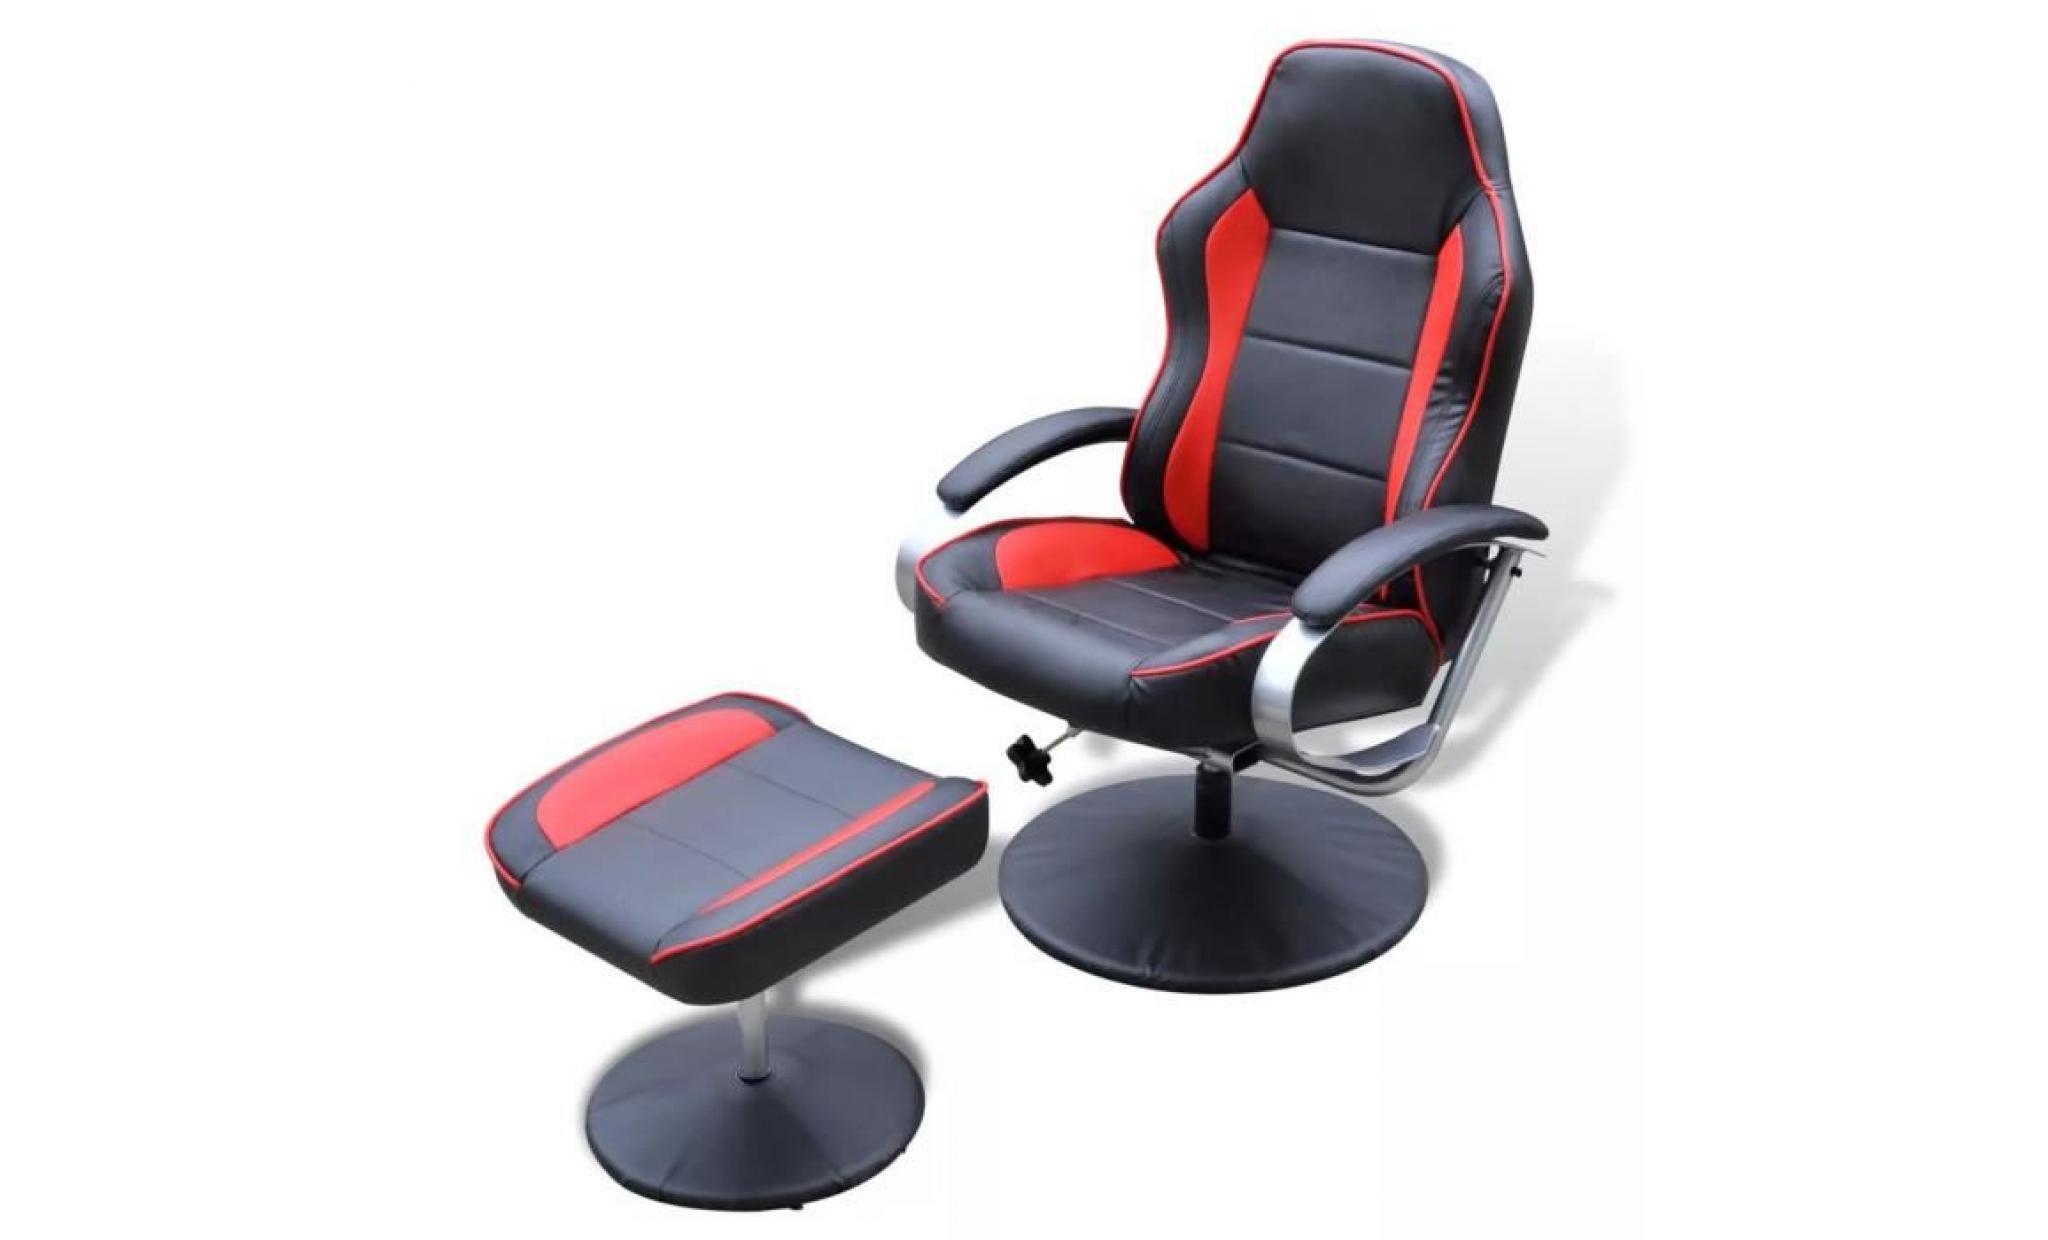 fauteuil avec repose pied réglable cuir synthétique noir fauteuil de jardin fauteuil relaxation fauteuil scandinave